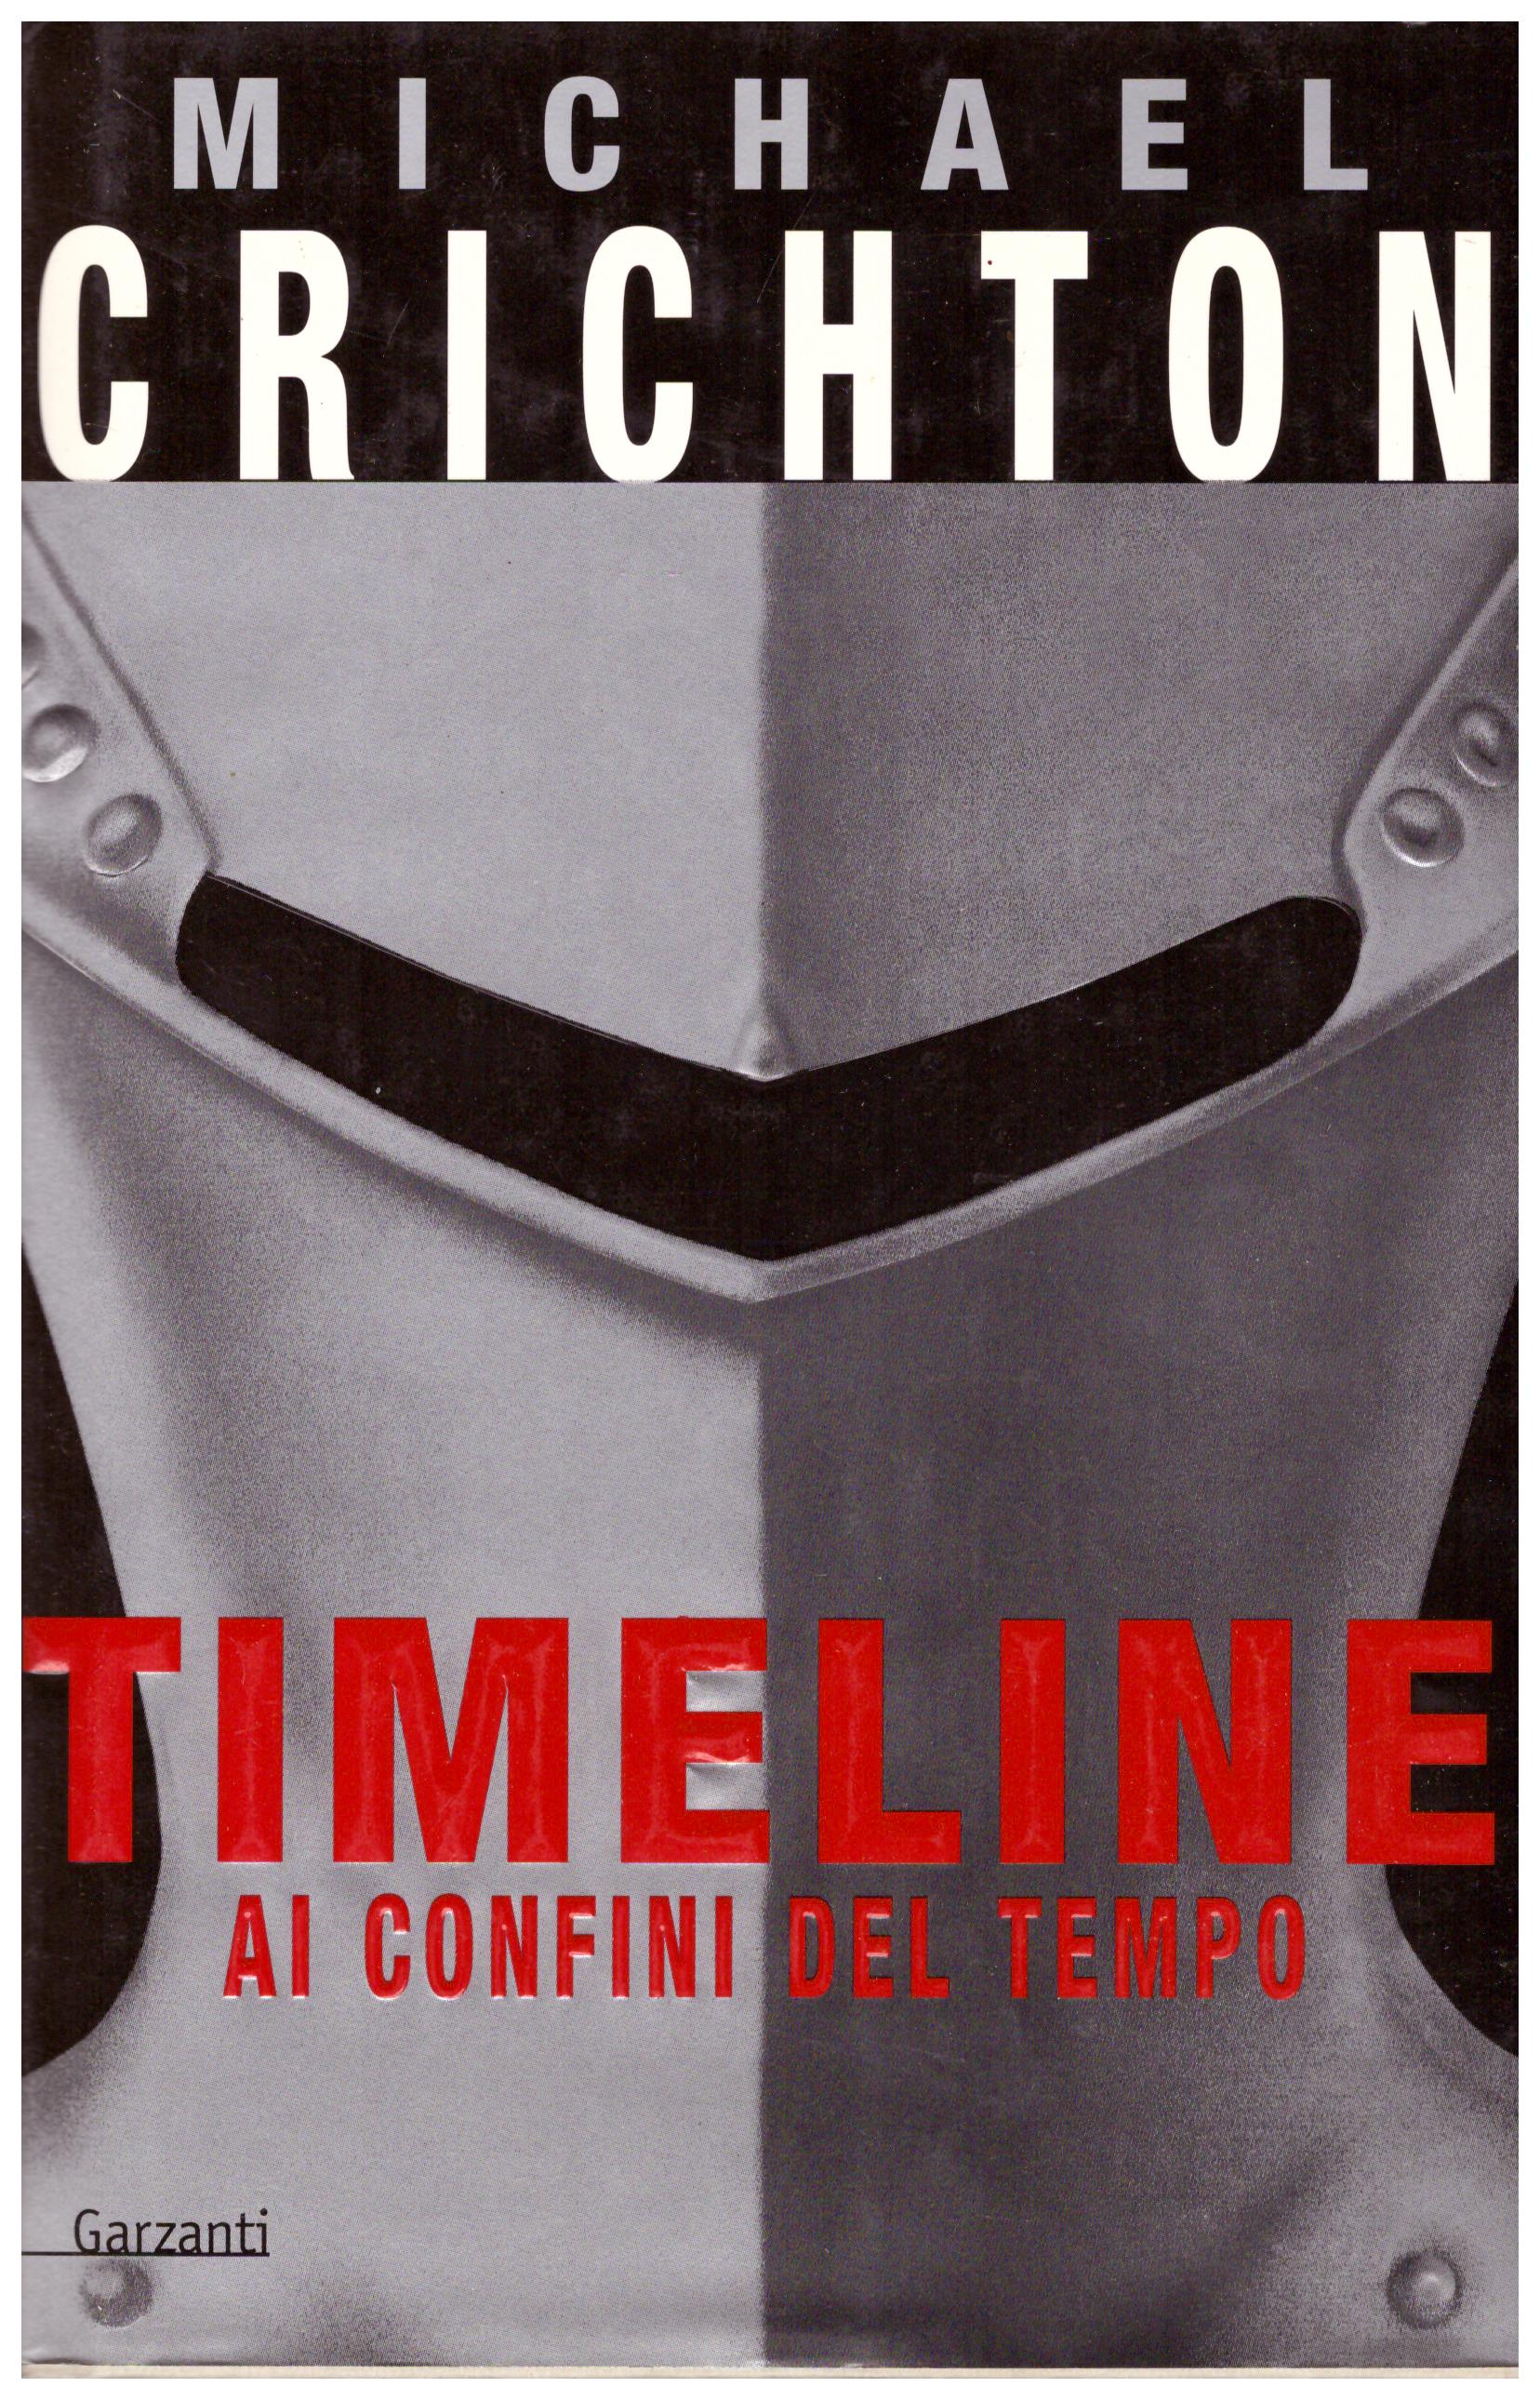 Titolo: Timeline Autore: Michael Crichton Editore: Garzanti, 2000